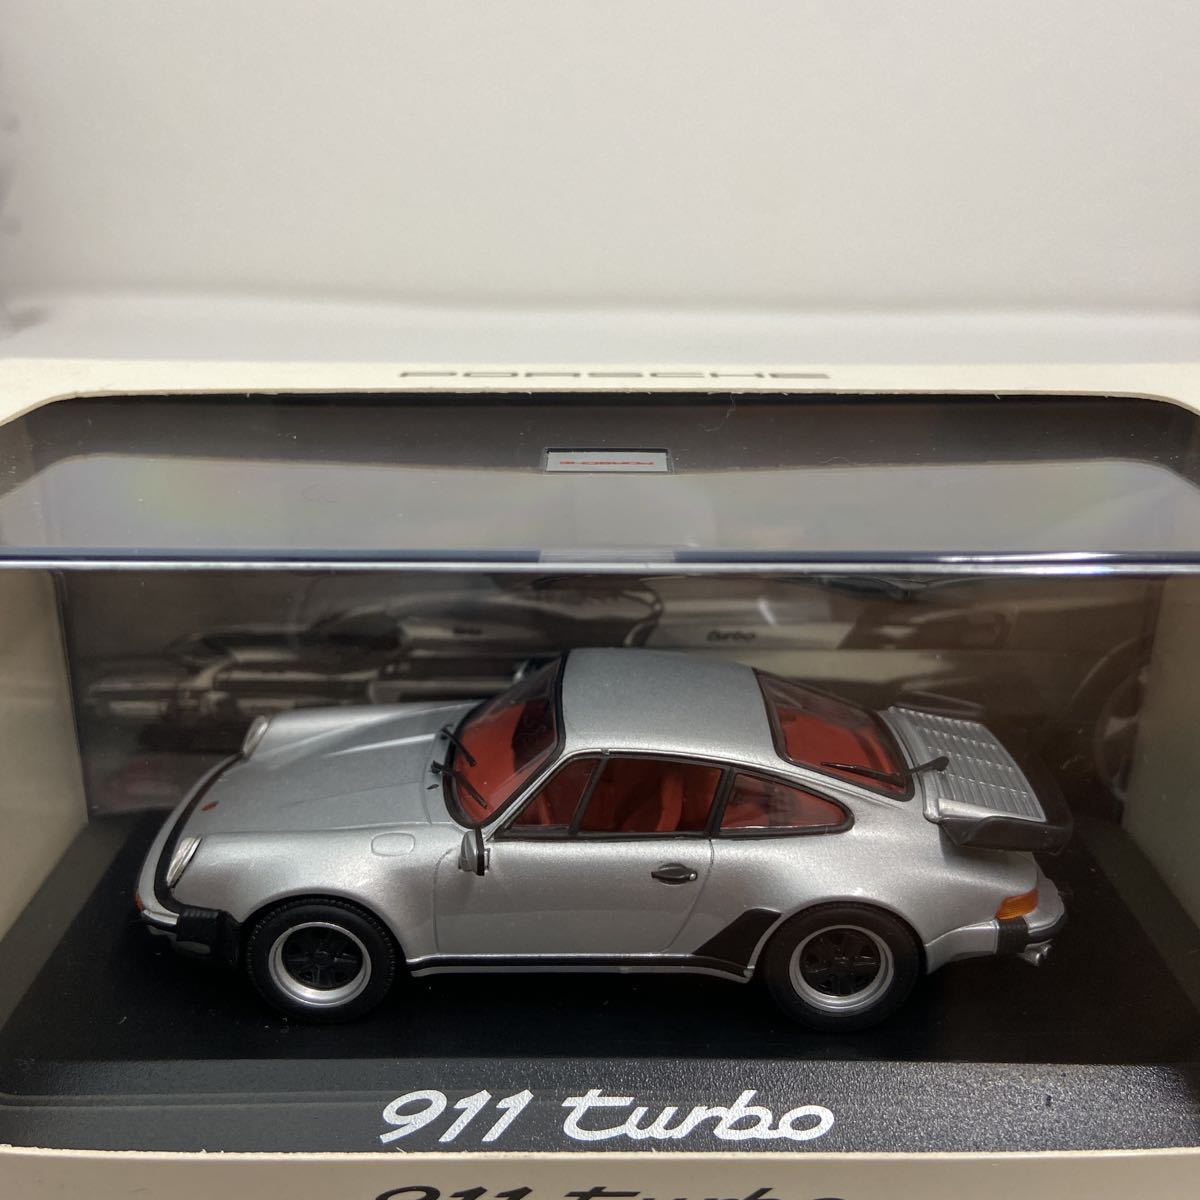 PORSCHE дилер специальный заказ PMA 1/43 Porsche 911 turbo Silver MINICHAMPS 930 type серебряный турбо воздушное охлаждение Minichamps миникар модель машина 